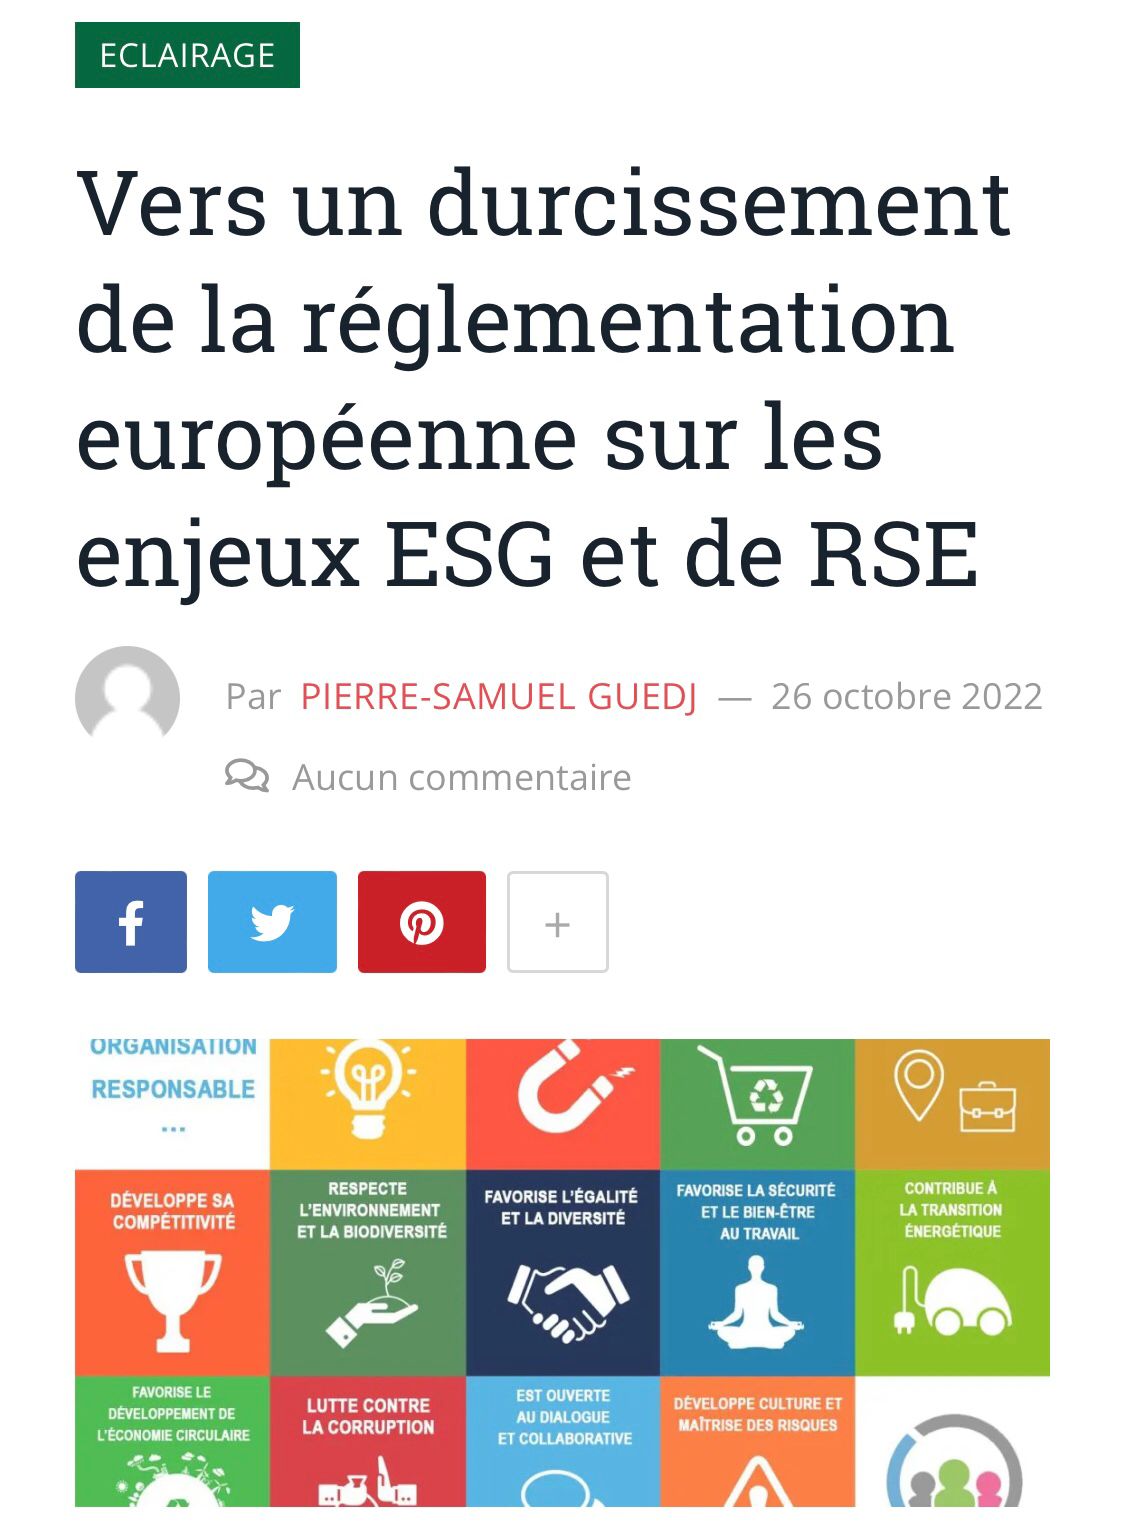 « Vers un durcissement de la réglementation européenne sur les enjeux ESG et de RSE » – analyse synthétique de Pierre-Samuel Guedj